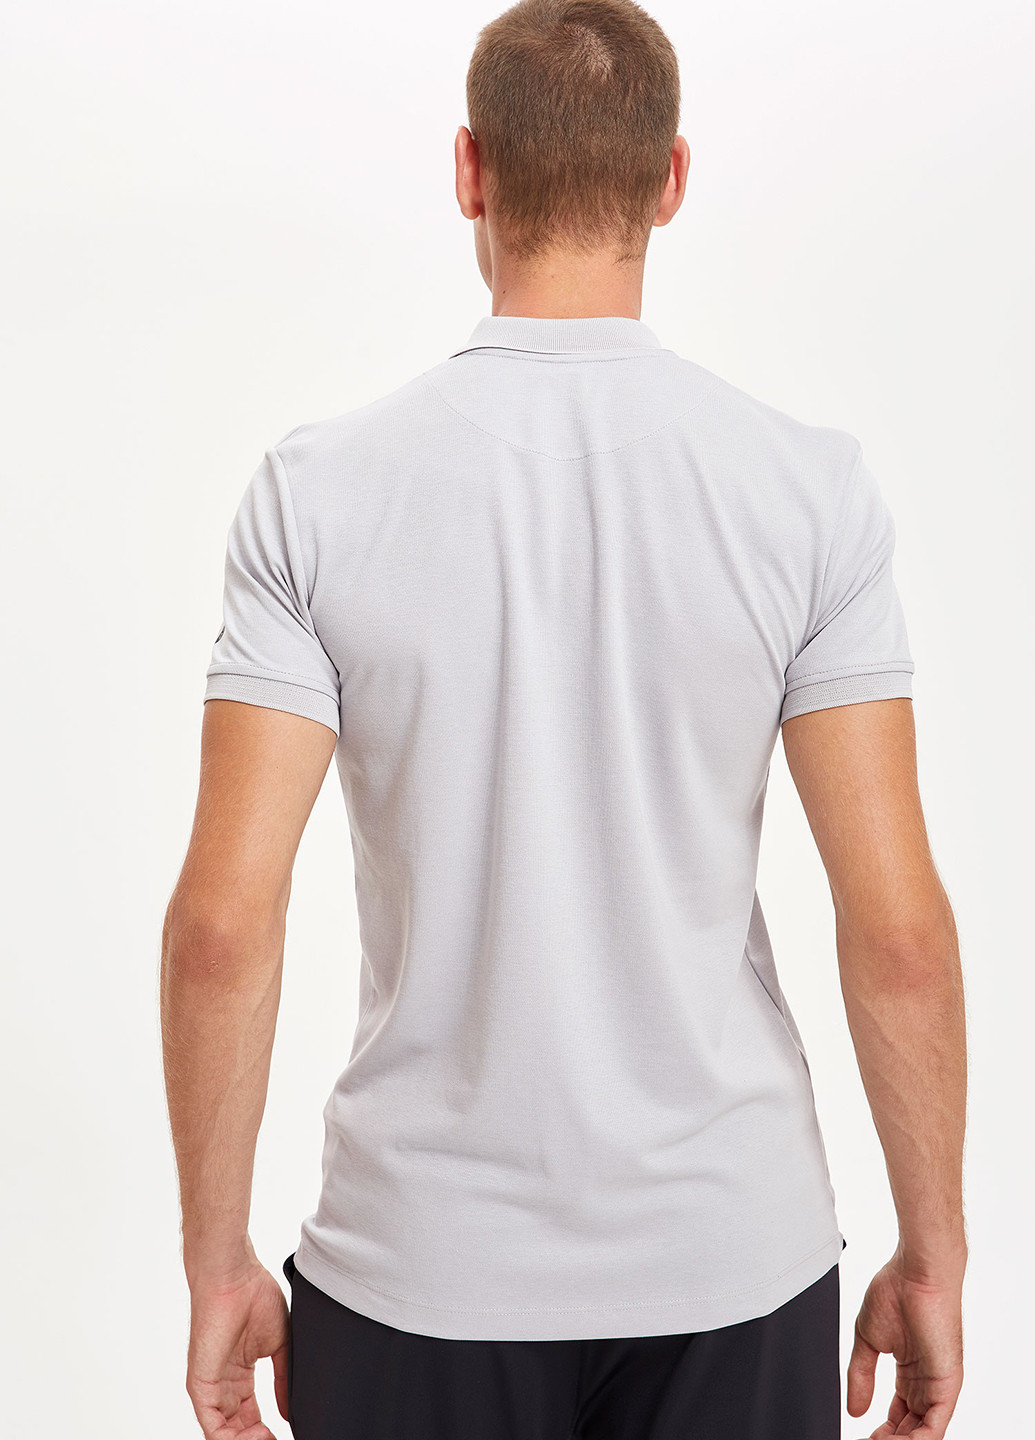 Светло-серая футболка-футболка для мужчин DeFacto